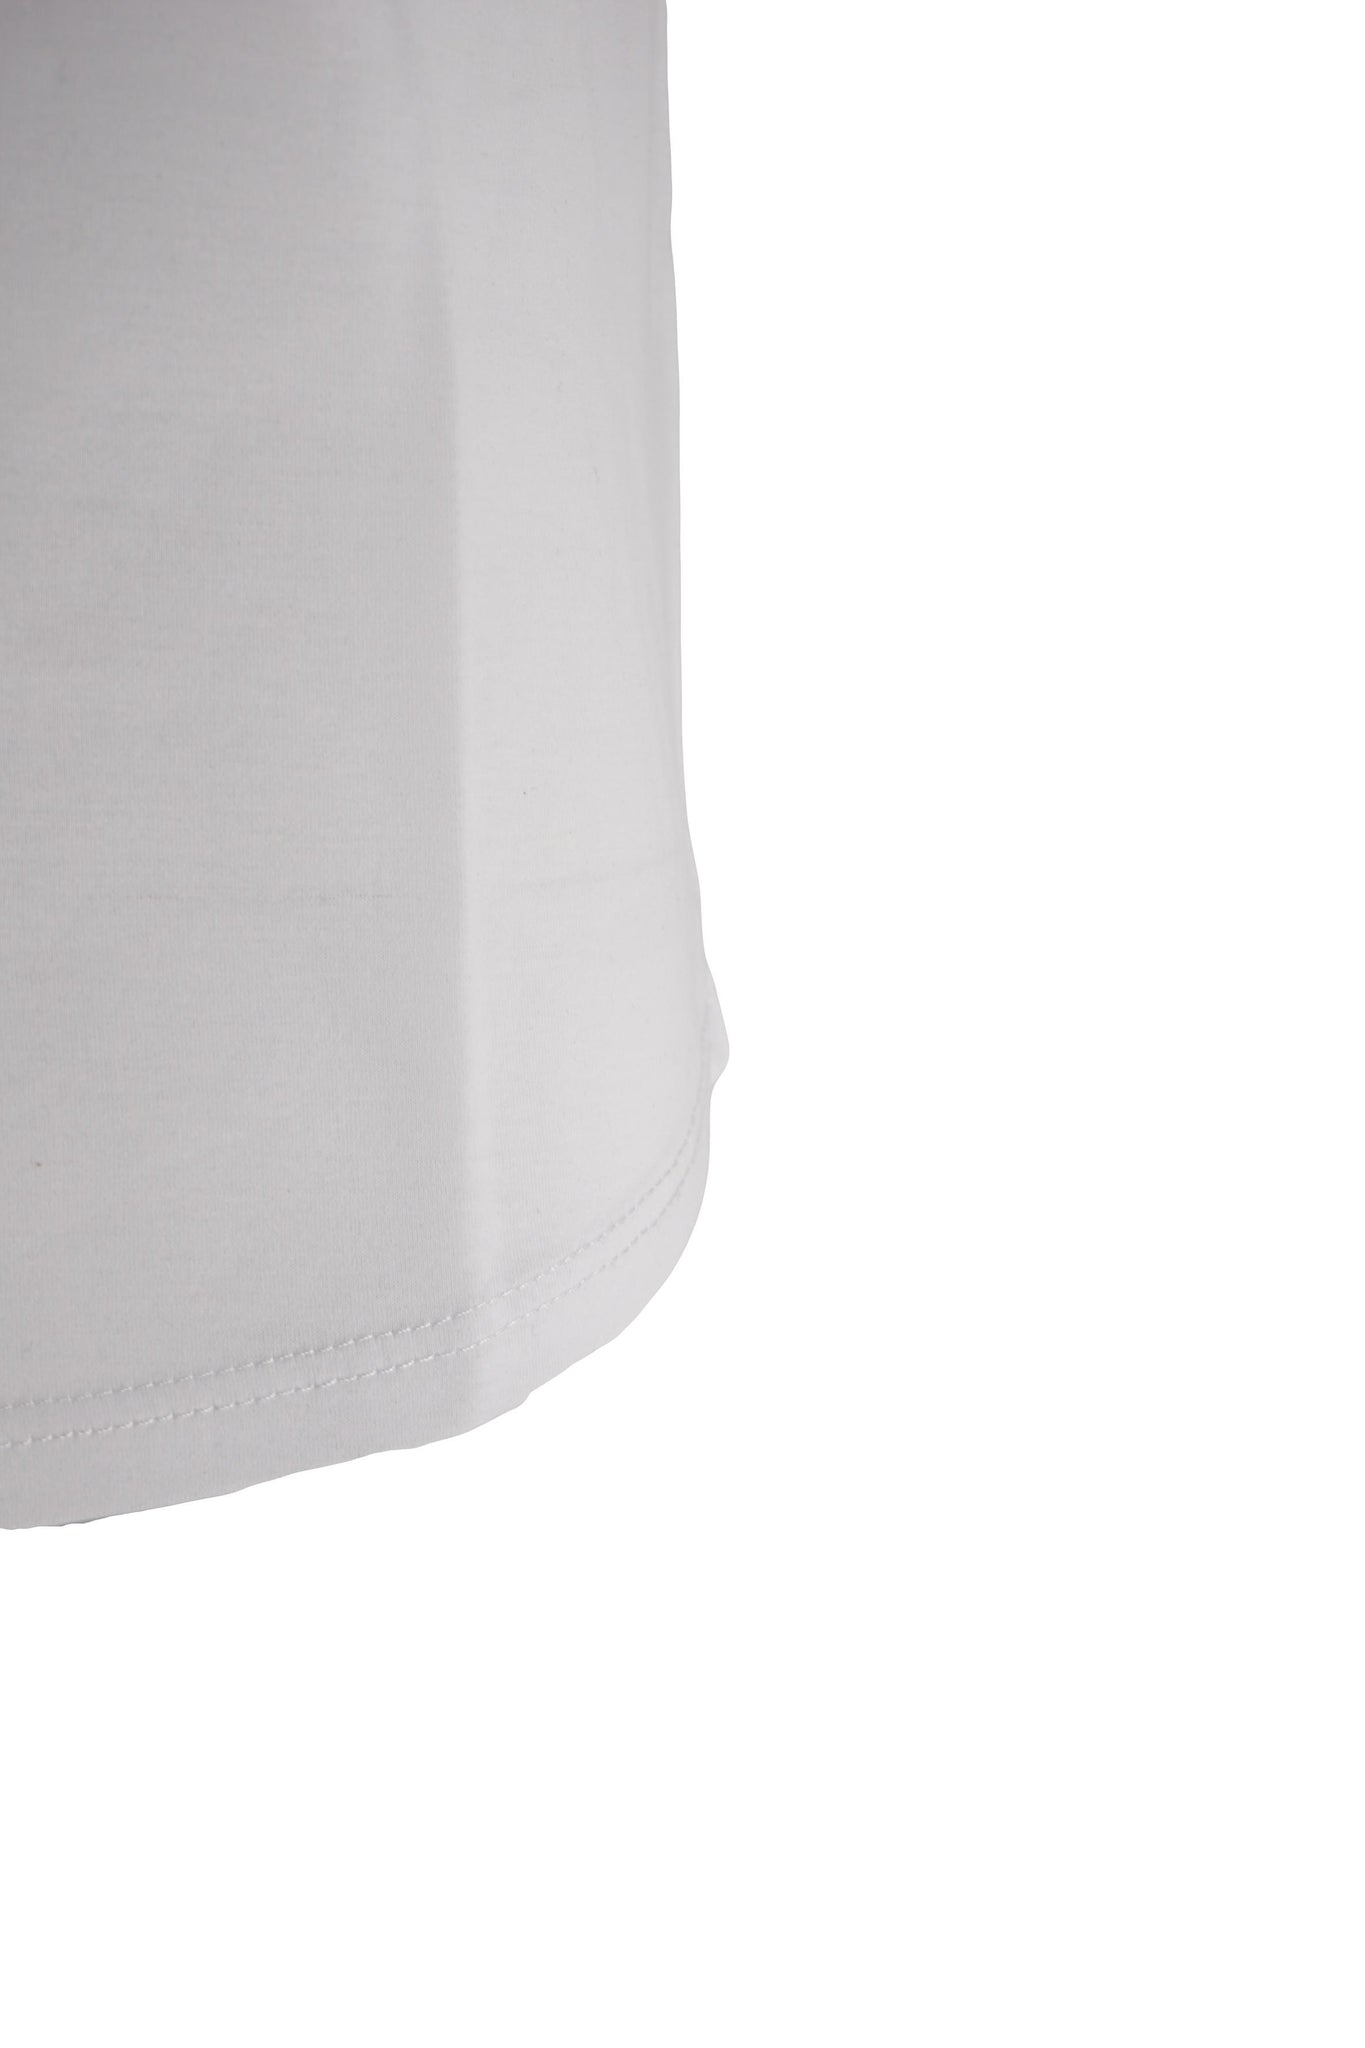 T-Shirt in Cotone Mercerizzato / Bianco - Ideal Moda